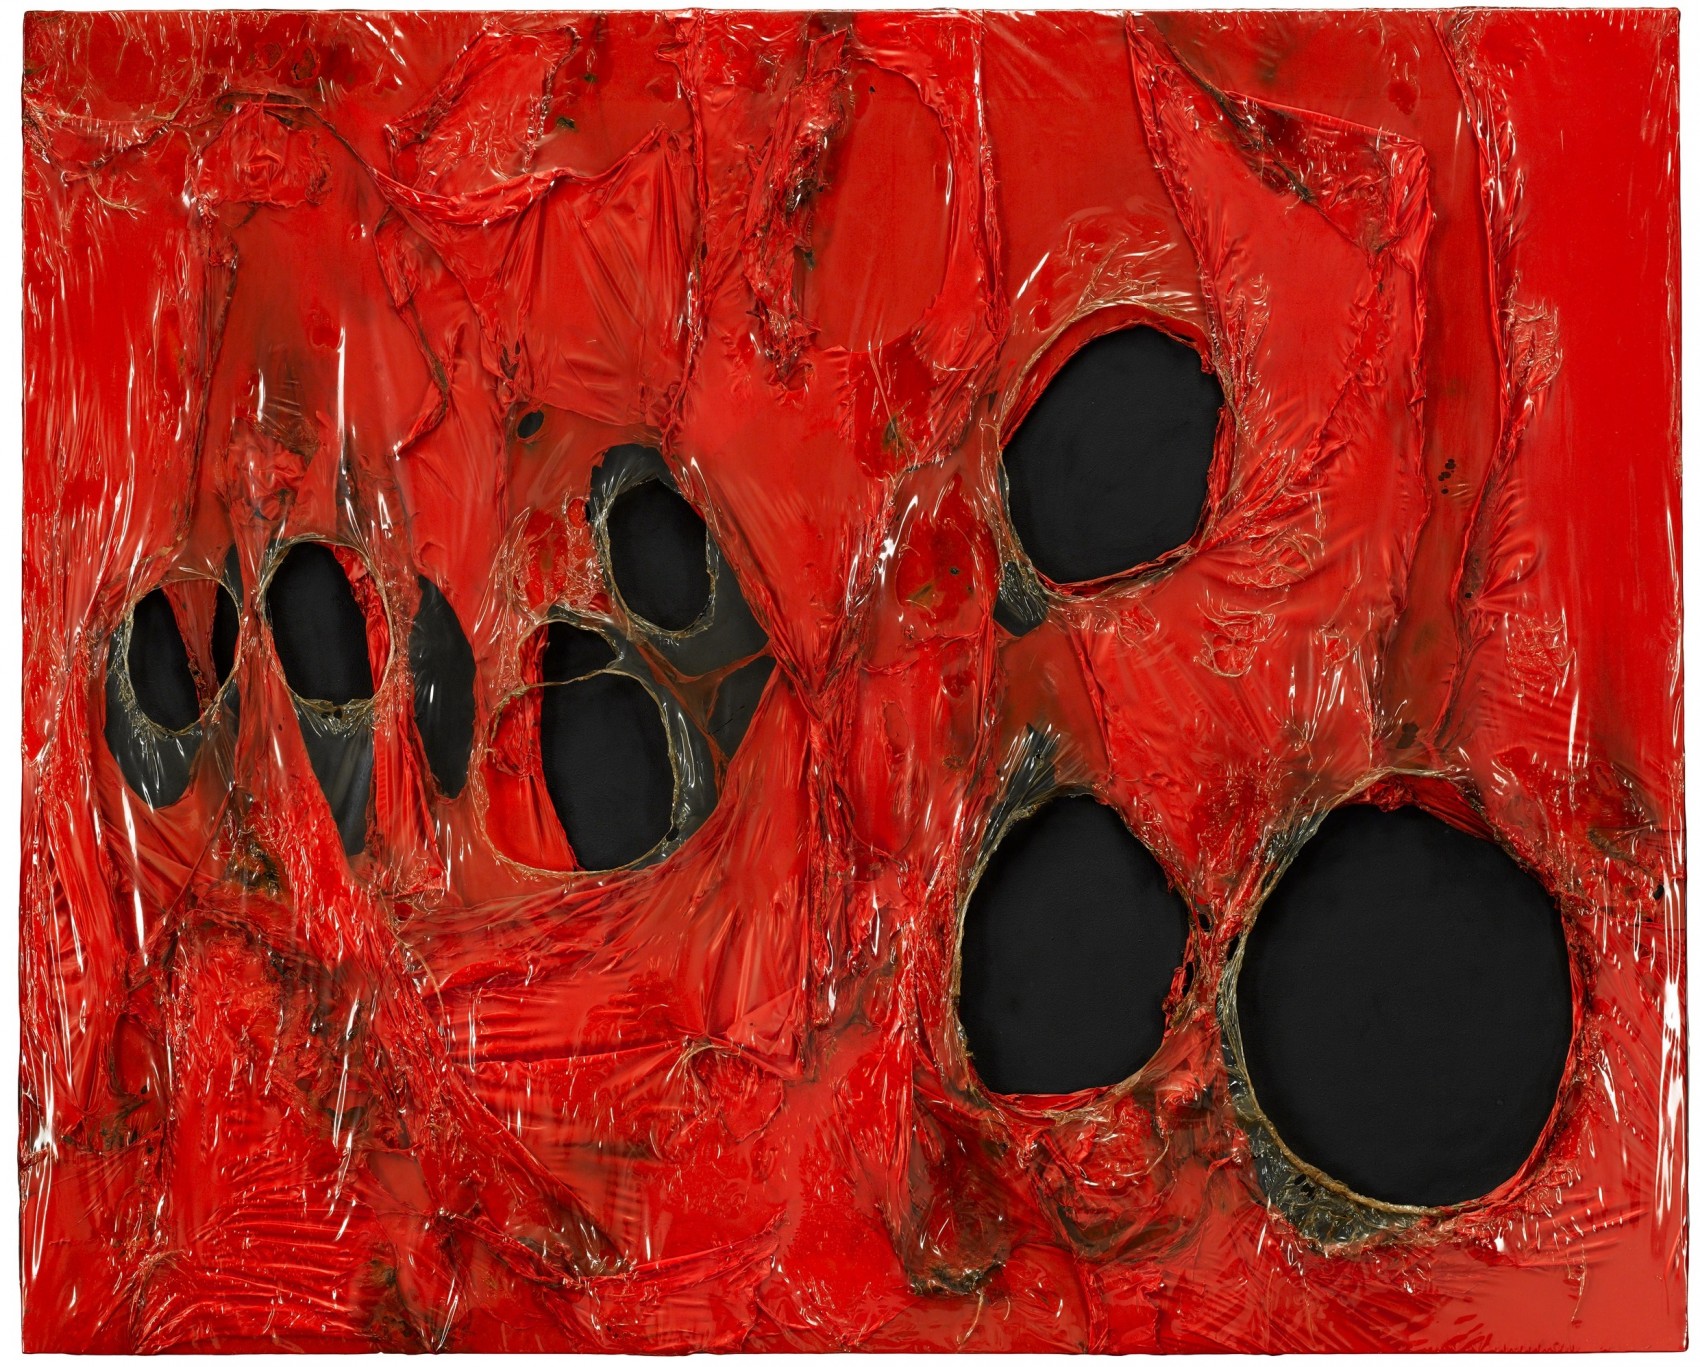 Alberto Burri Rosso Plastica 1963 ©Fondazione Burri